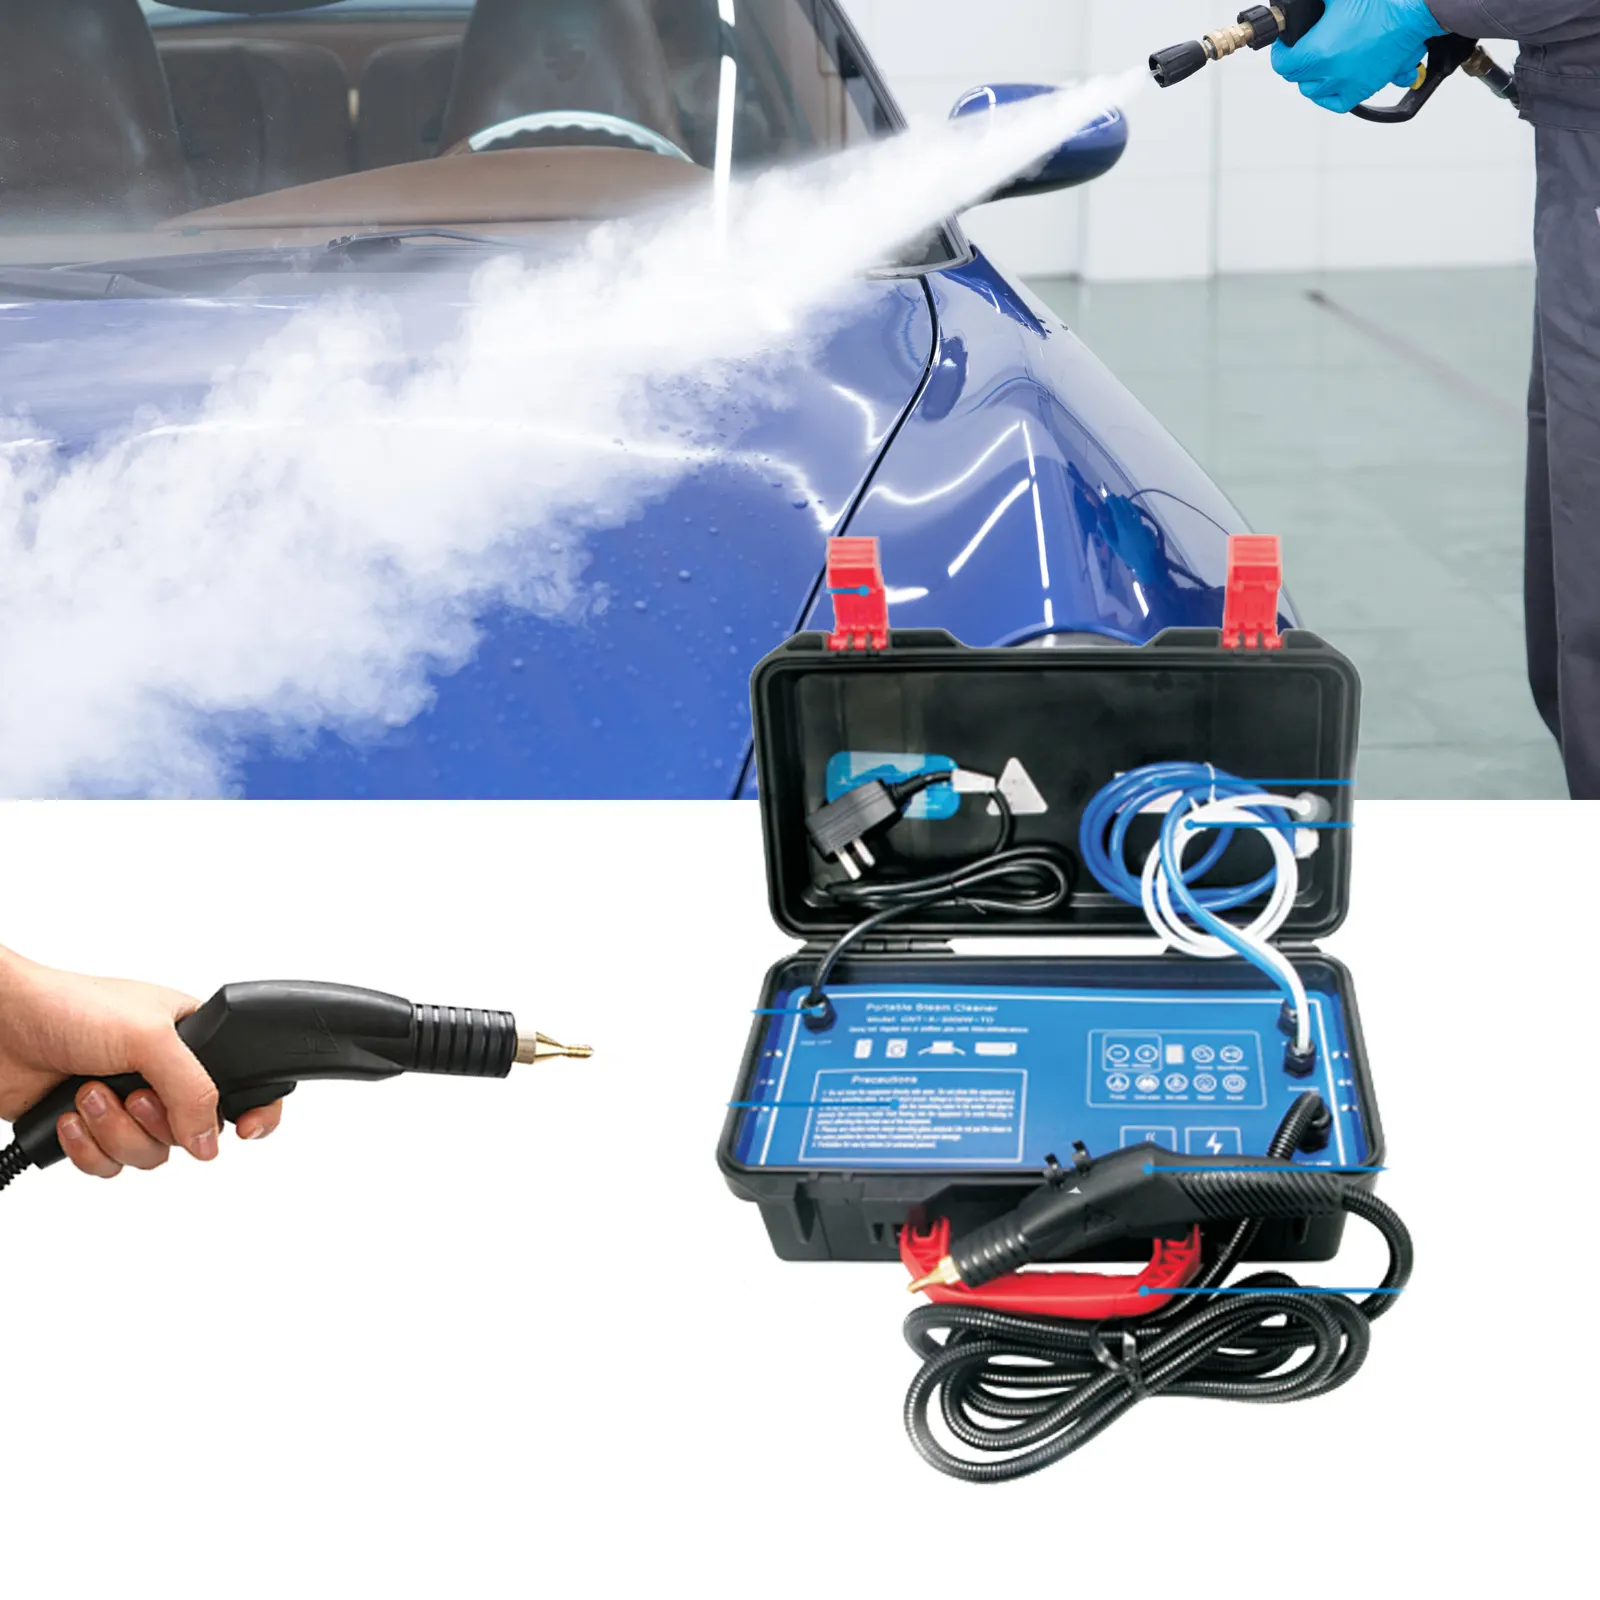 Profesyonel ev araba yıkama makinesi araba kullanımı temizlik vapur taşınabilir basınçlı buharlı temizleyici alet çantası ile